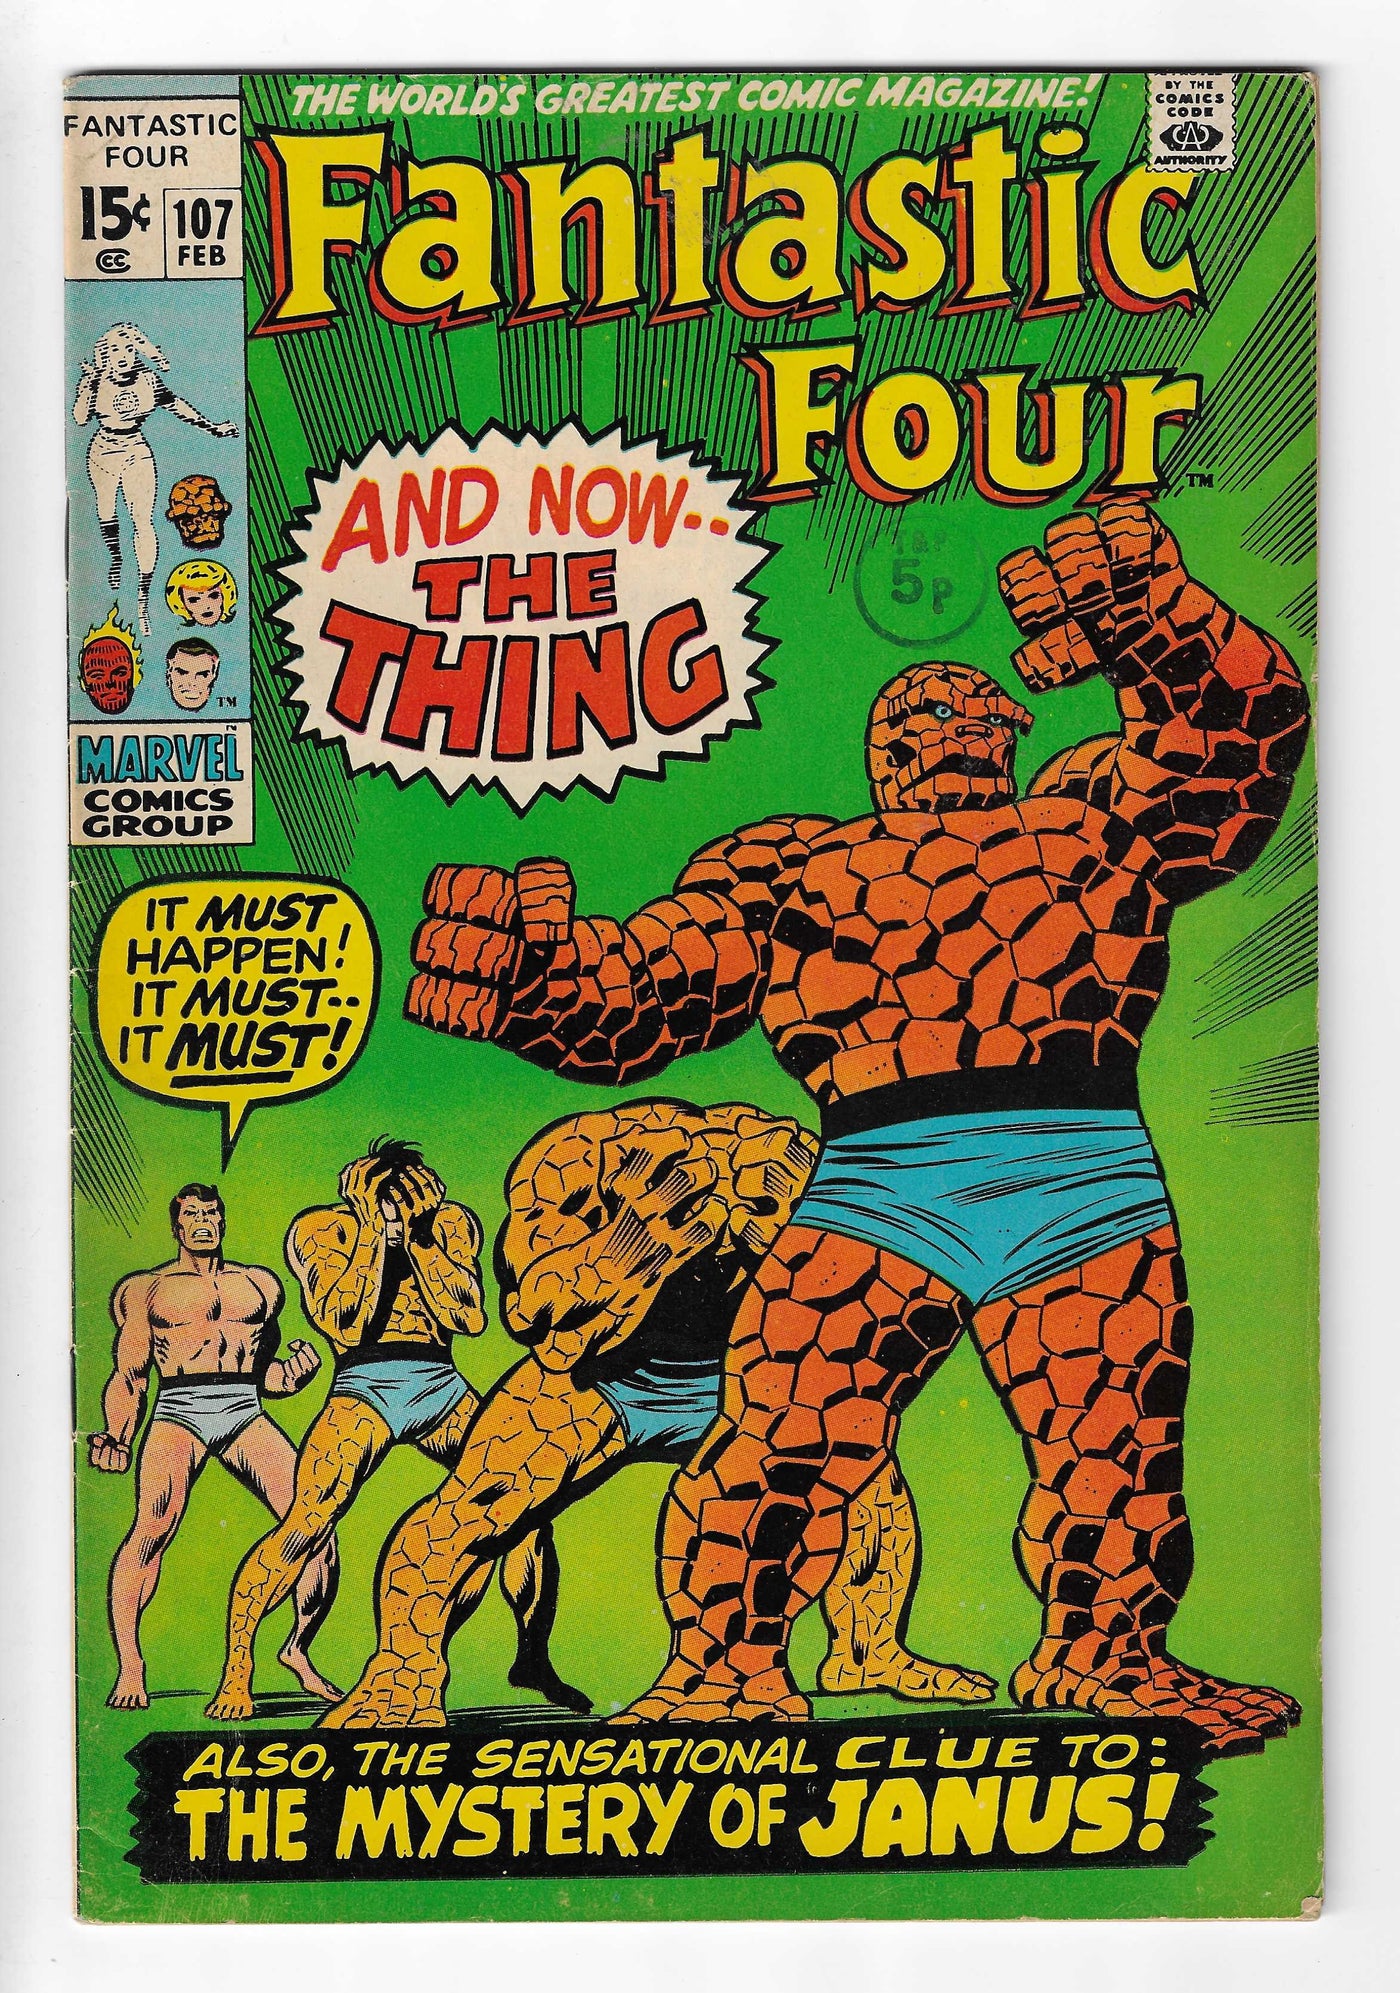 Fantastic Four (Volume 1) #107